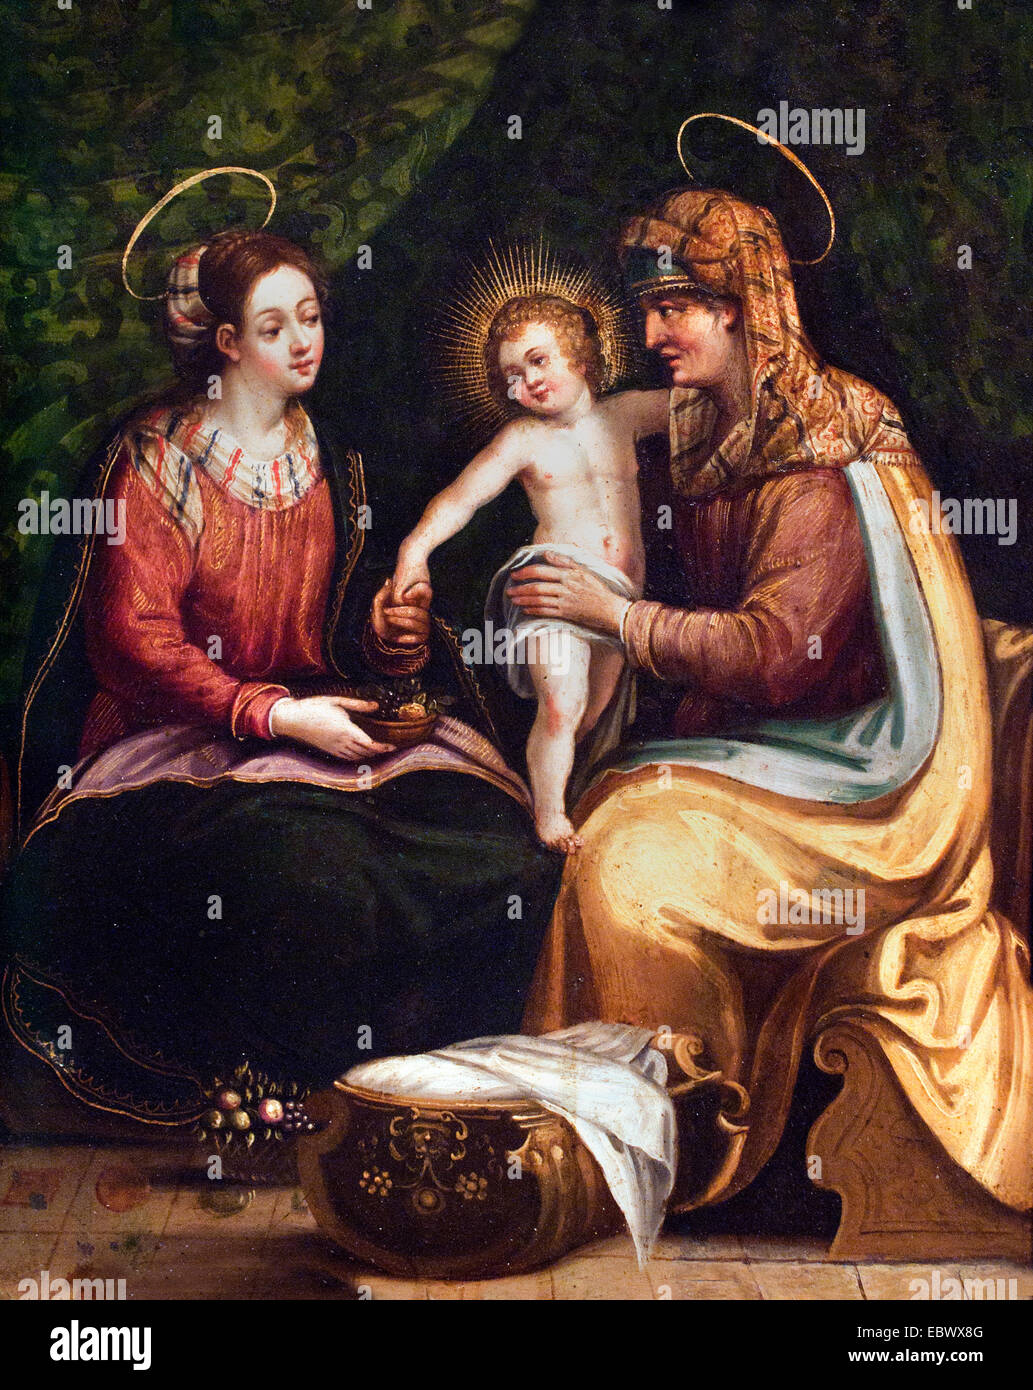 St Ana La Vierge et l'Enfant Jésus flamande du xviie siècle - l'École d'Espagnol Espagne Banque D'Images